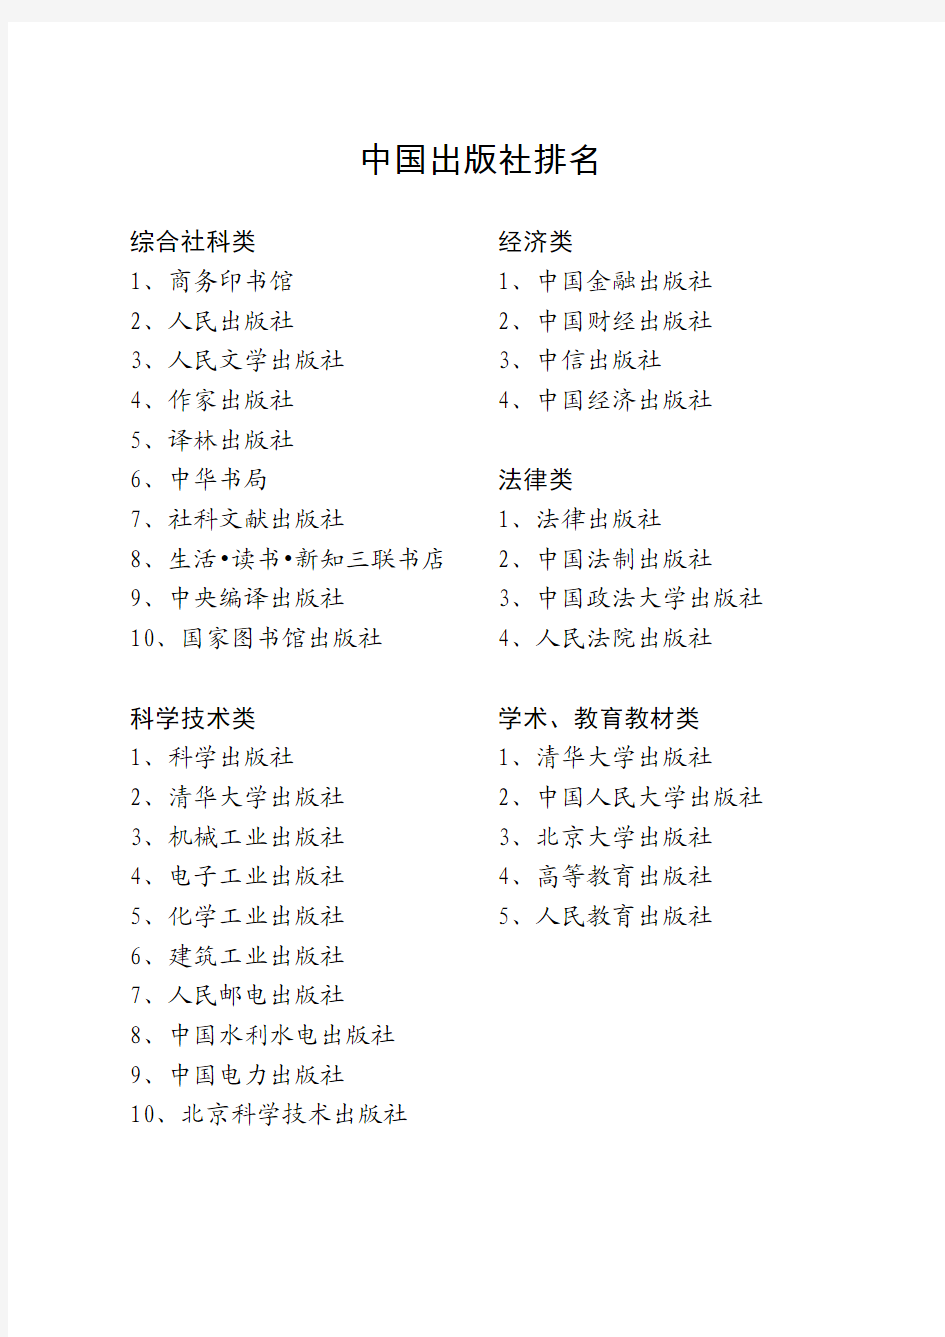 中国出版社排名